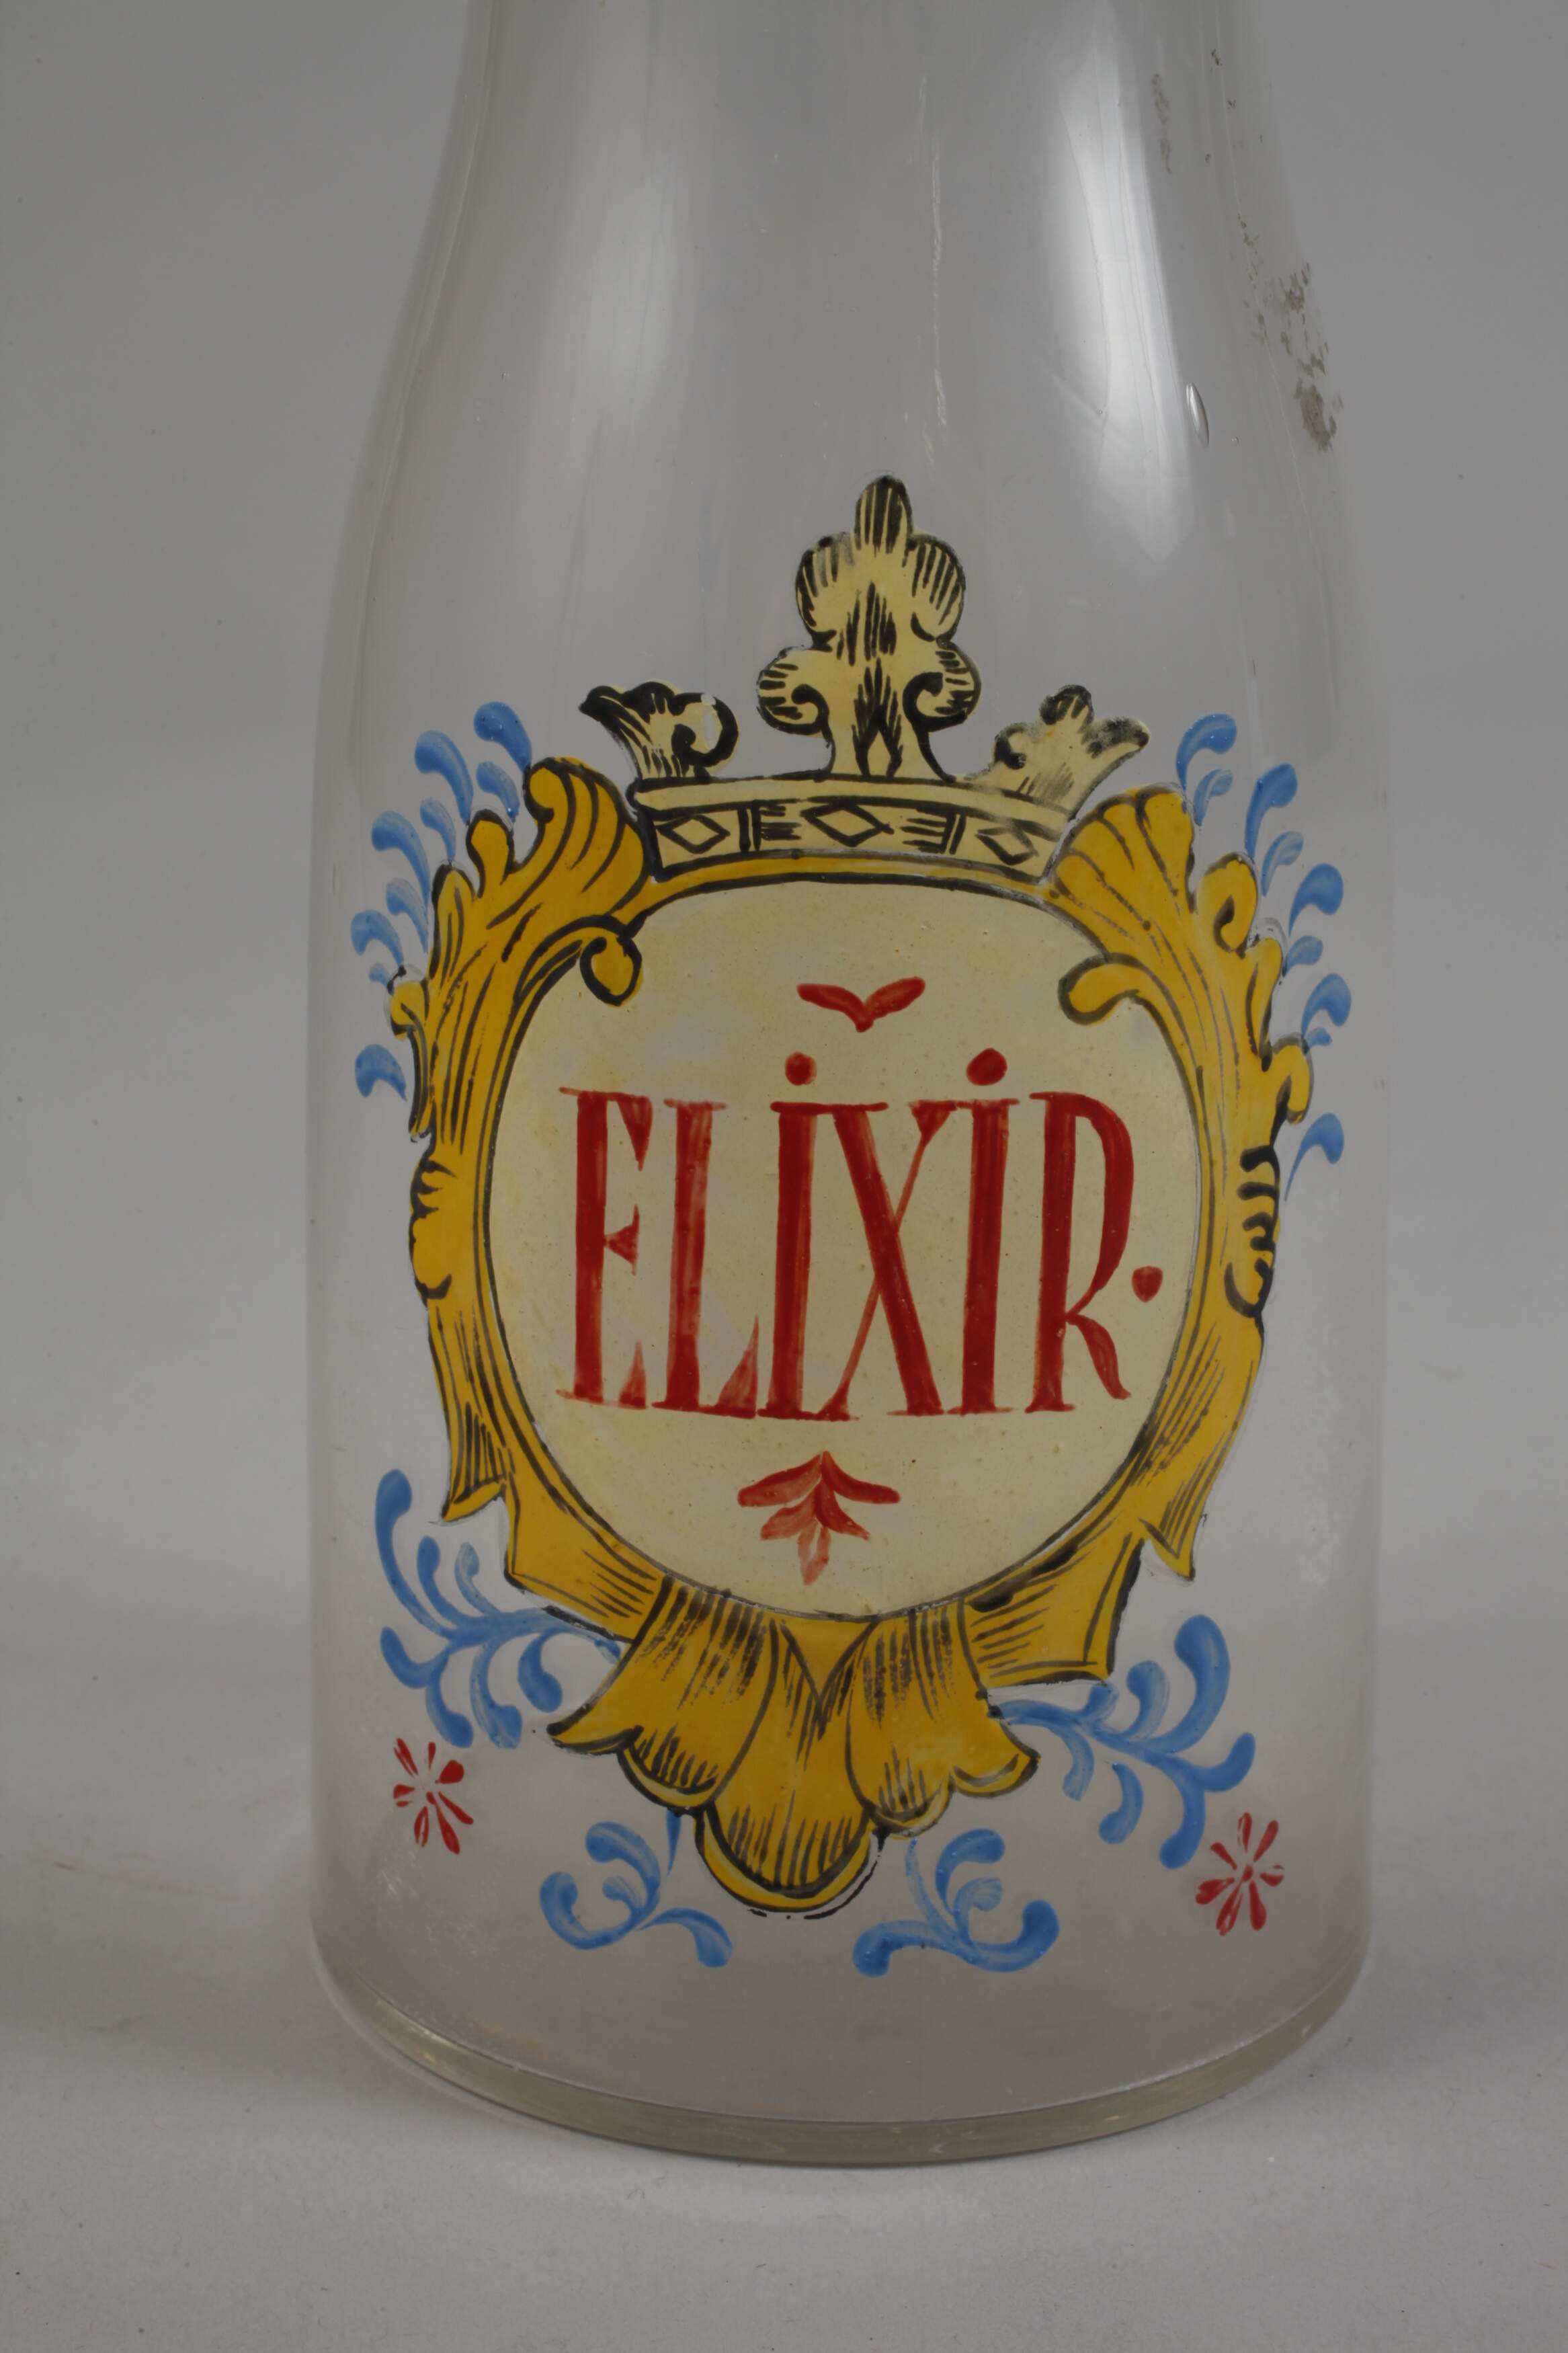 Apothecary jar "Elixir" - Image 2 of 3